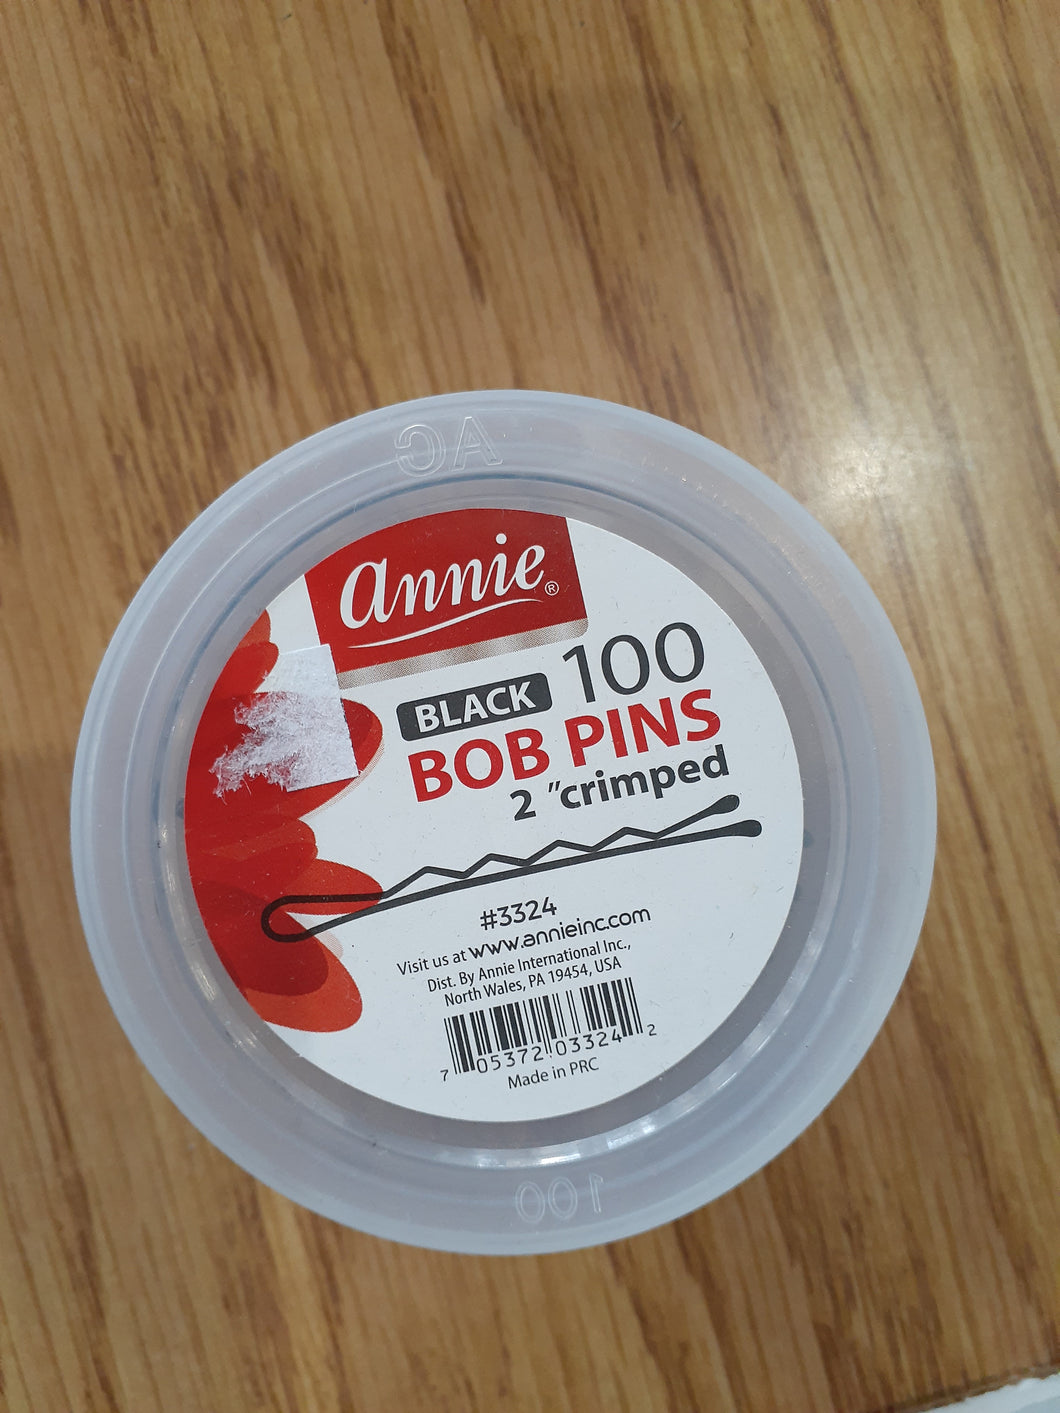 Annie black 100 bob pins 2